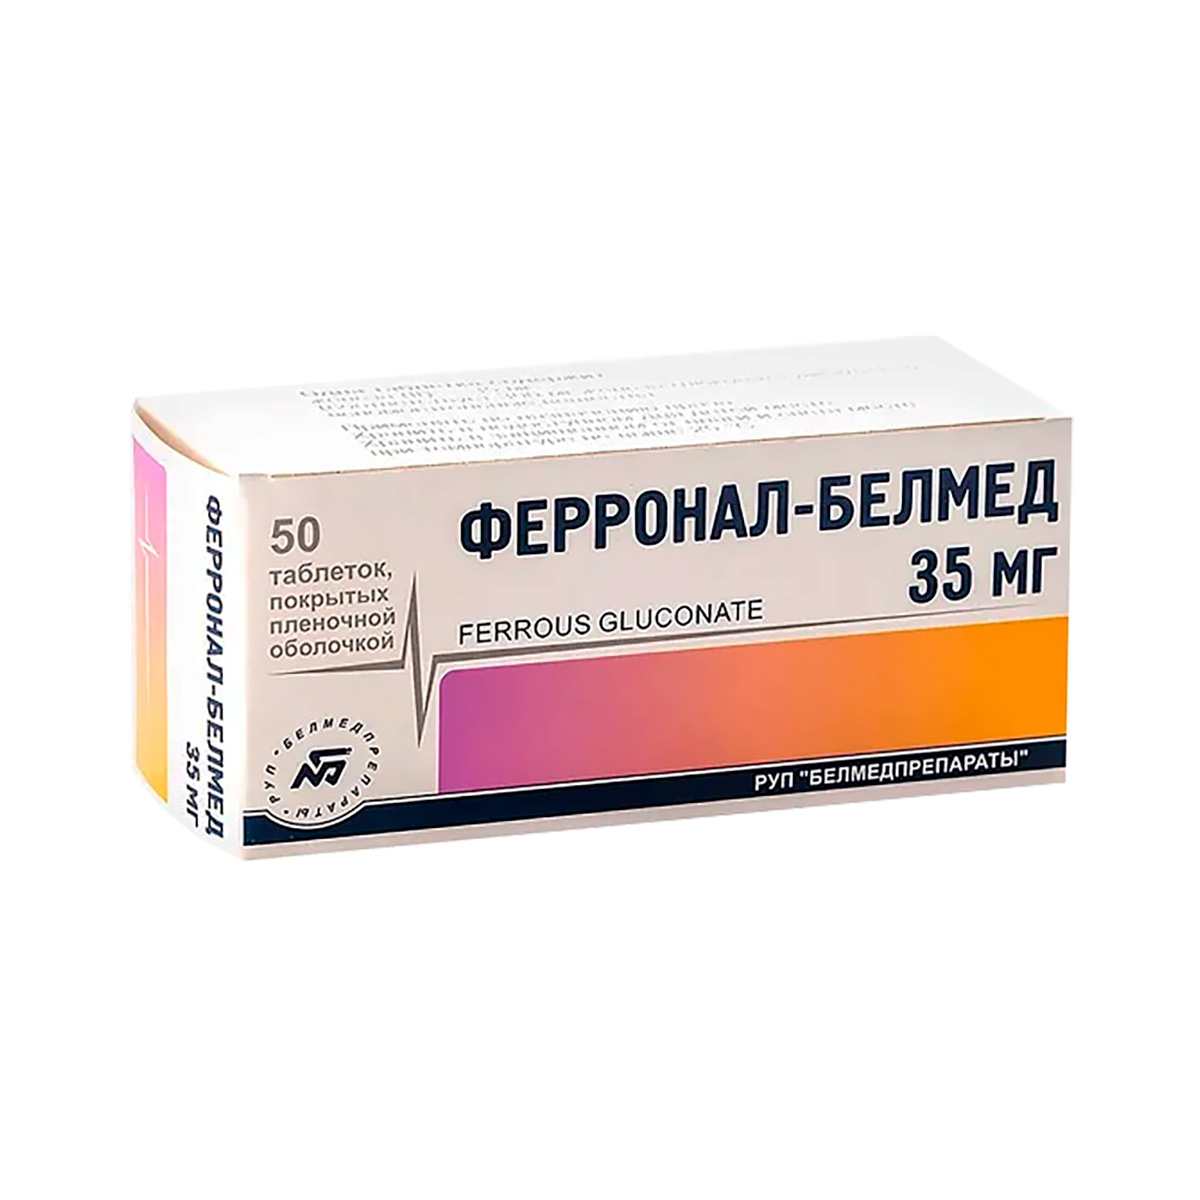 Ферронал-Белмед 35 мг таблетки покрытые пленочной оболочкой 50 шт